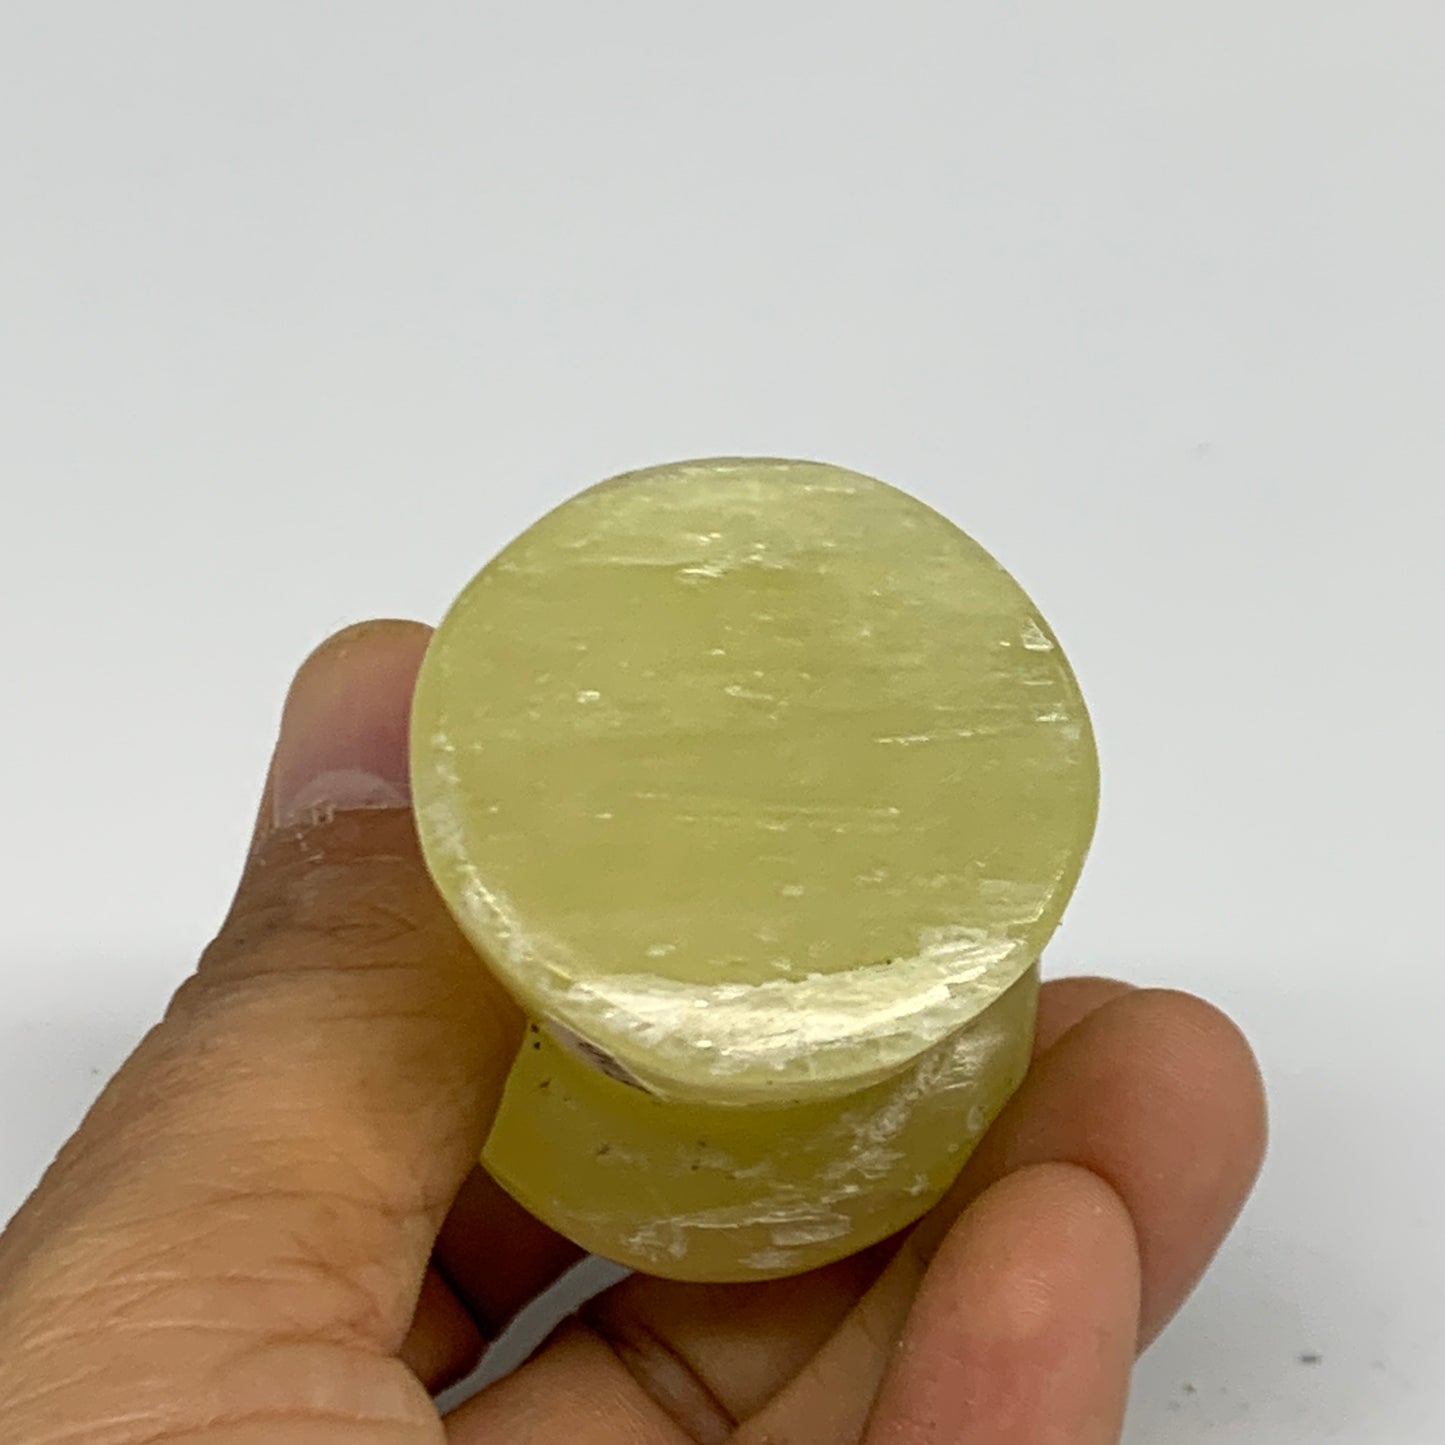 135g, 2.4"x1.4" Natural Lemon Calcite Mushroom Gemstone @Pakistan, B31686